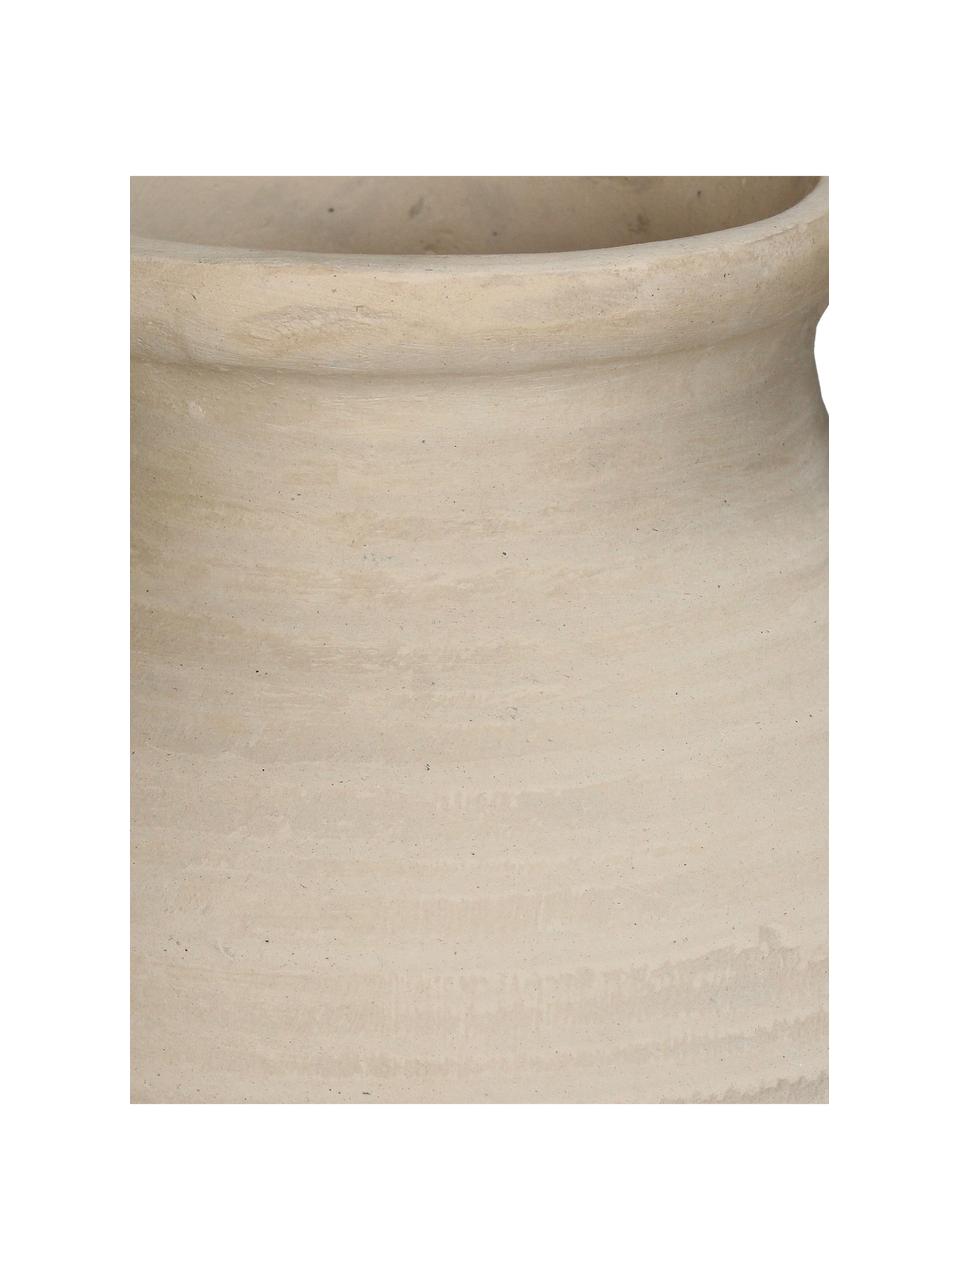 Vaso decorativo fatto a mano in cartapesta Raw, alt. 26 cm, Cartapesta, >30% di materiale riciclato, Beige chiaro, Larg. 25 x Alt. 26 cm